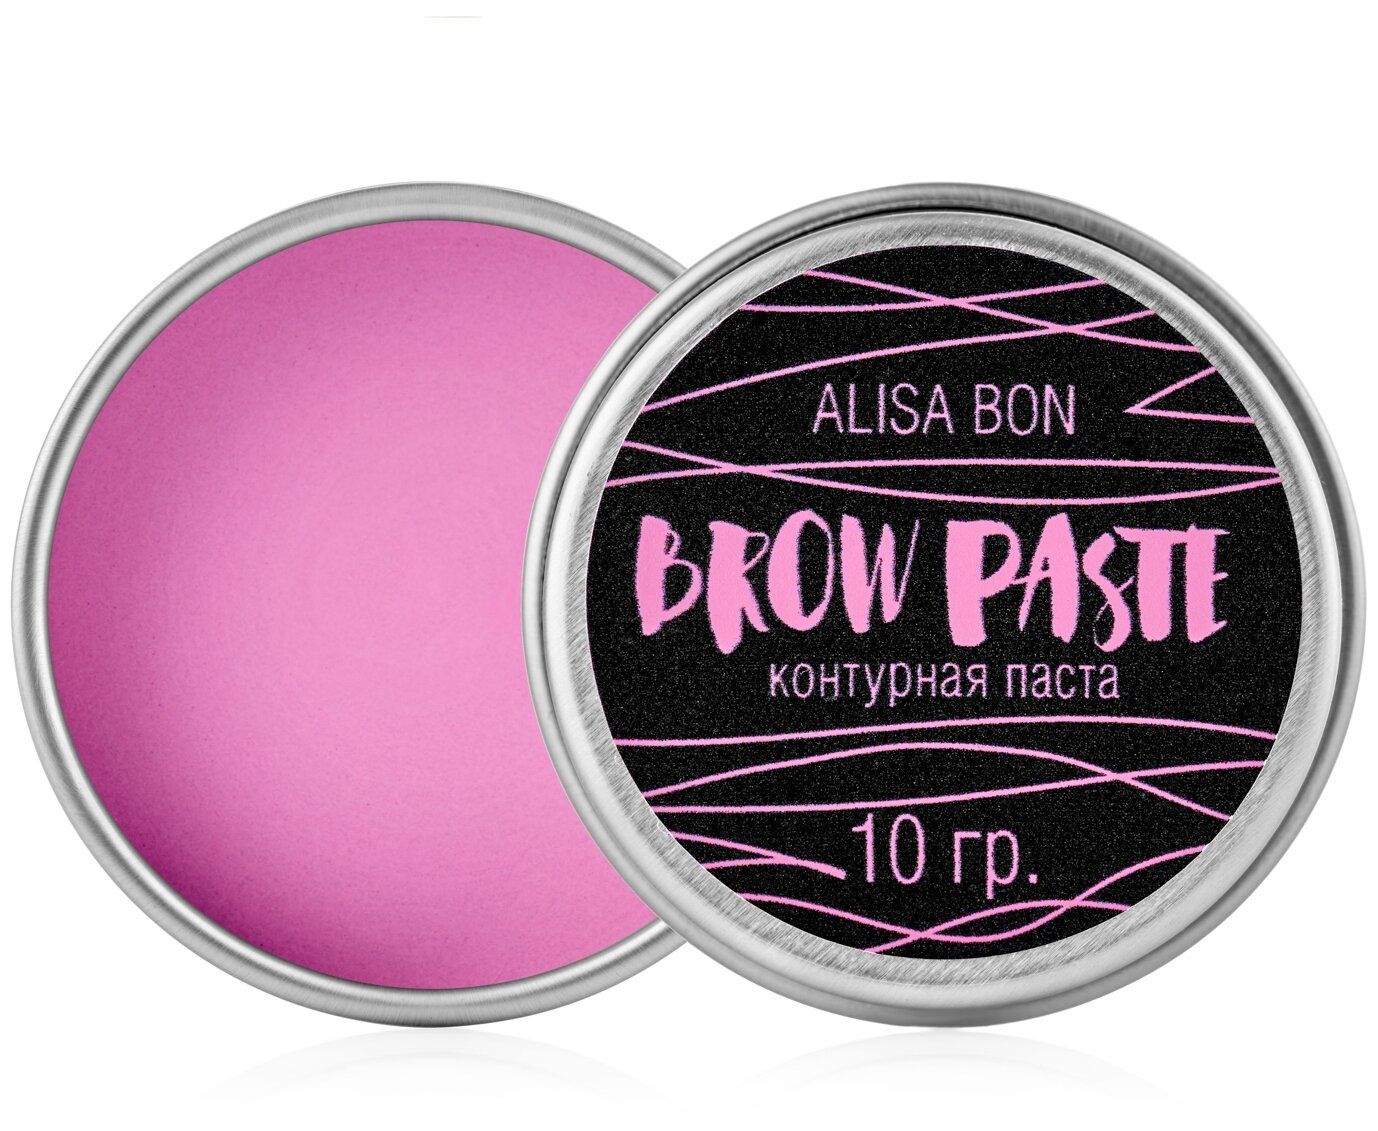 Alisa Bon Контурная паста для бровей BROW PASTE